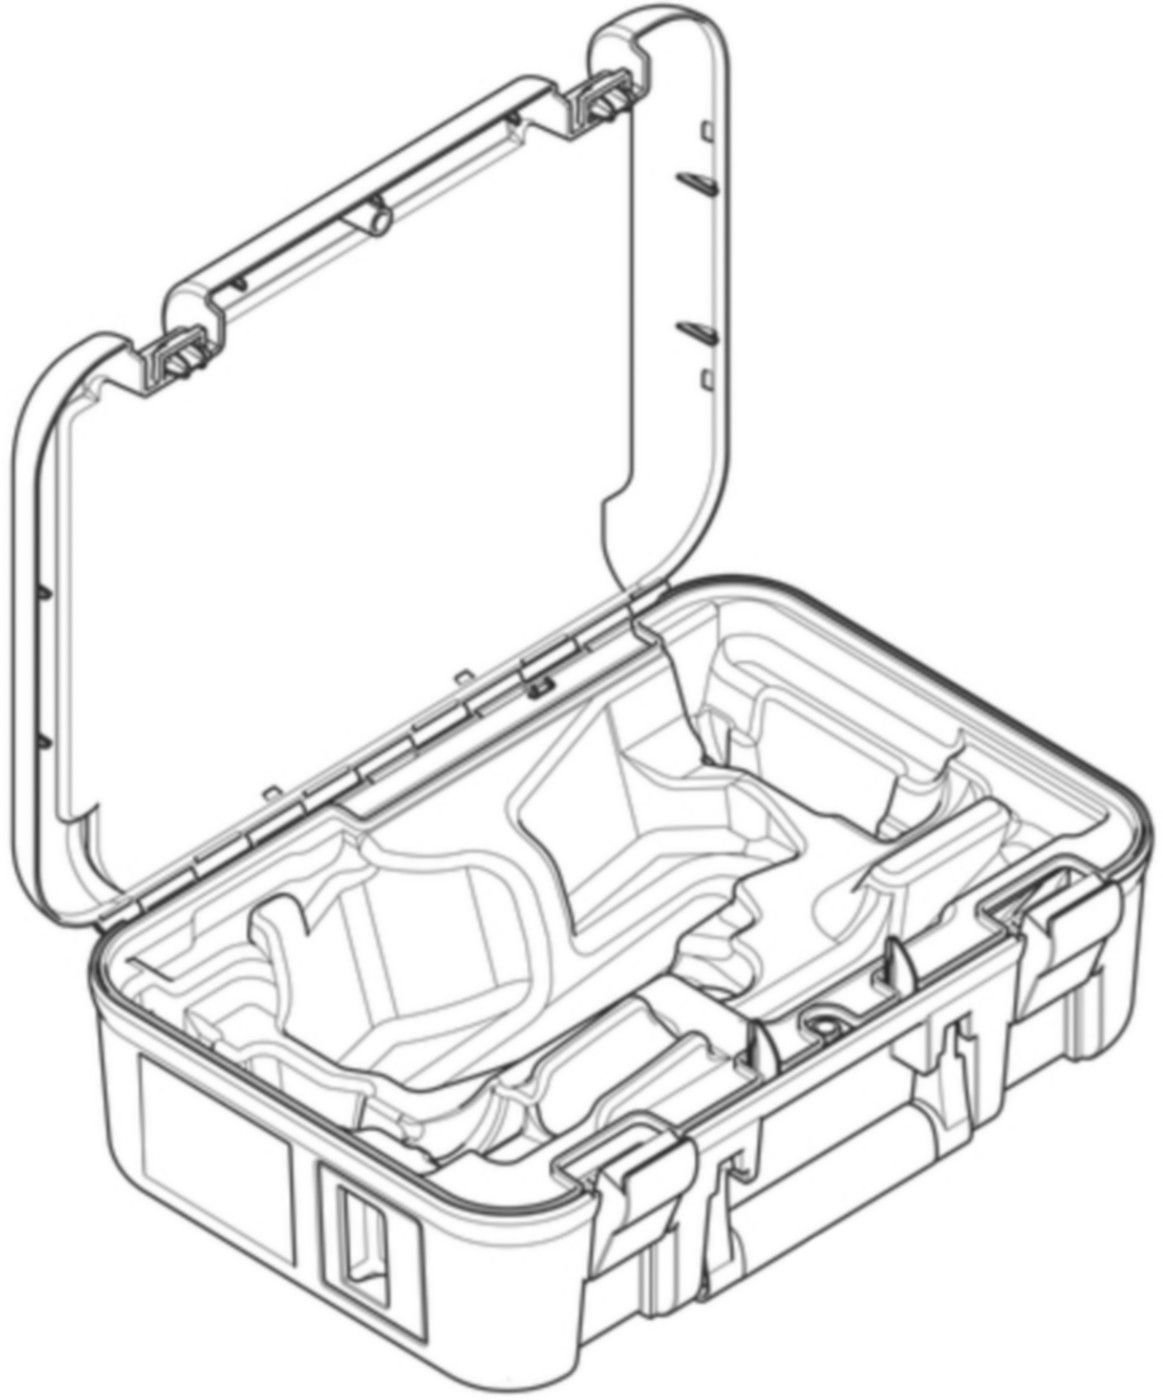 Koffer leer für Mepla Pressschlingen (2) 691.133.00.1 zu Pressschlingen 63/75mm - Geberit Werkzeuge und Zubehör